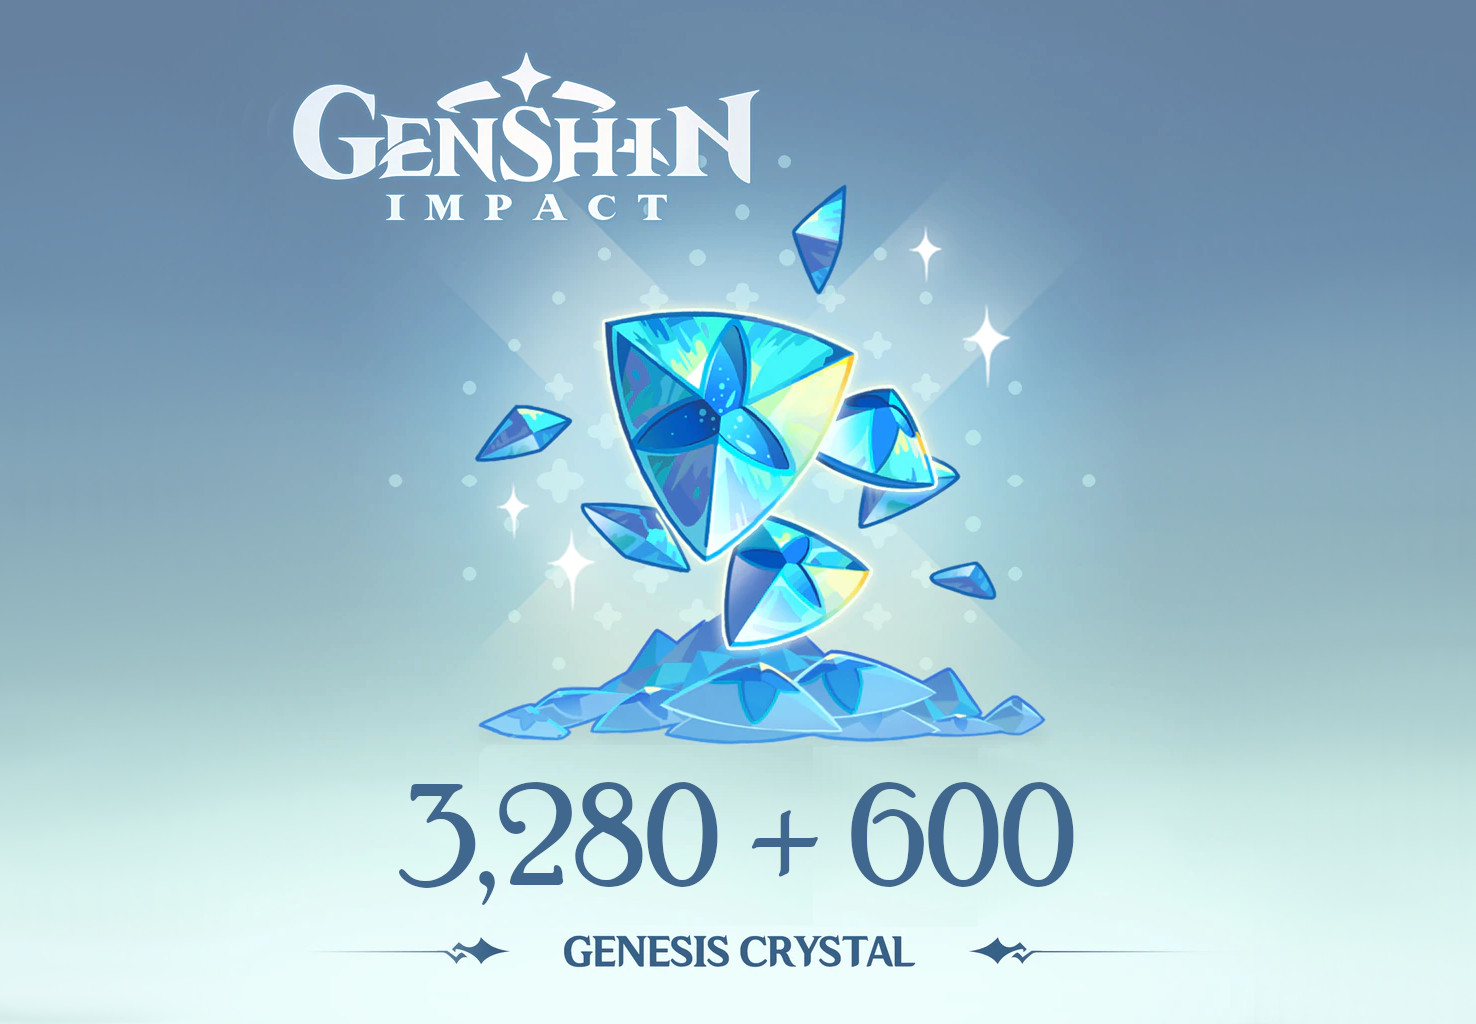 Genshin Impact - 3,280 + 600 Genesis Crystals Reidos Voucher 53.39 USD